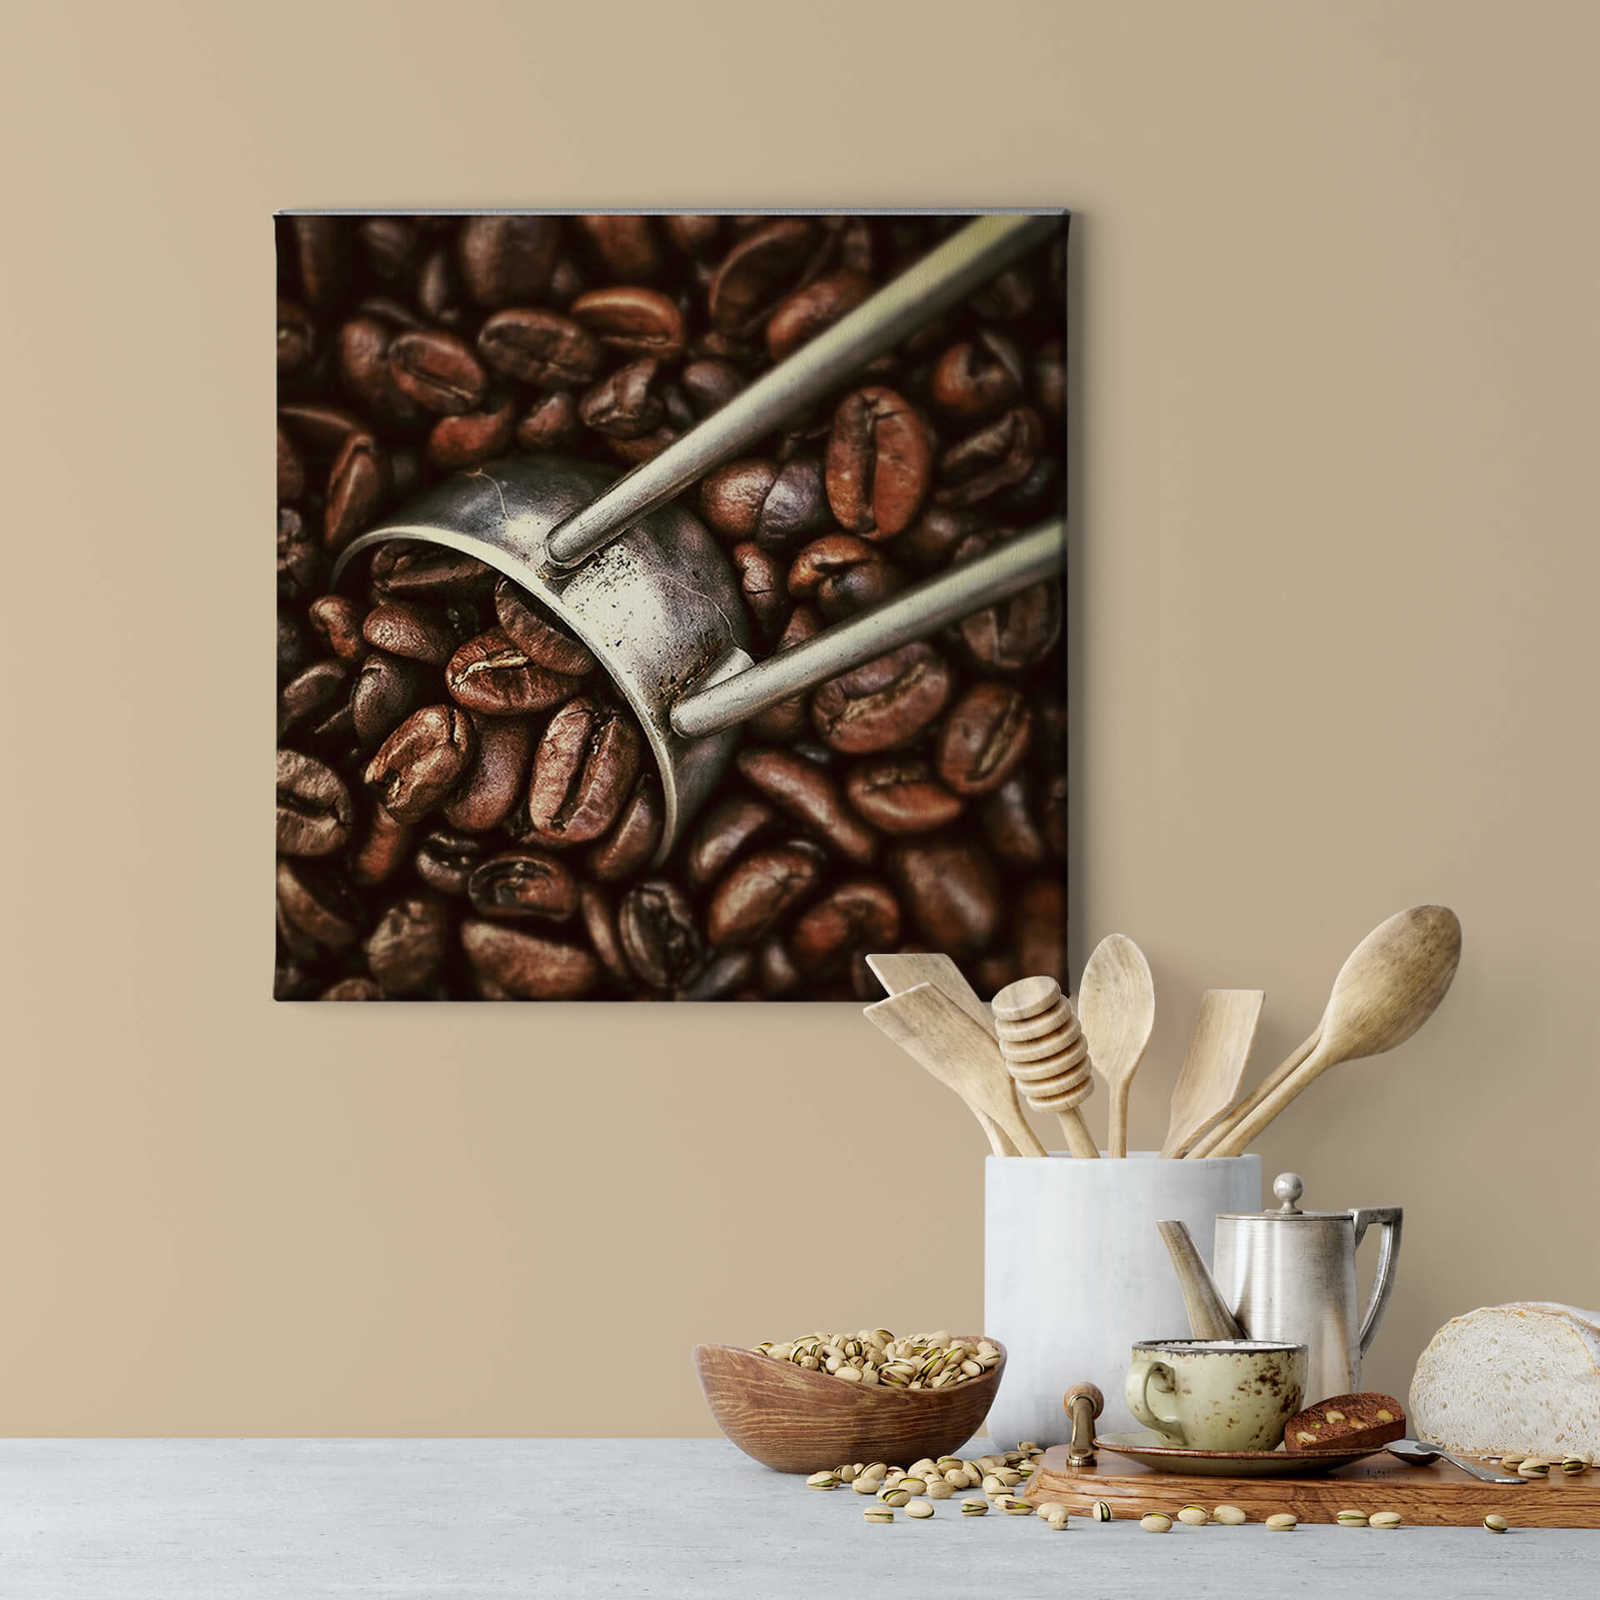             Quadratisches Bild Kaffeebohnen – 0,50 m x 0,50 m
        